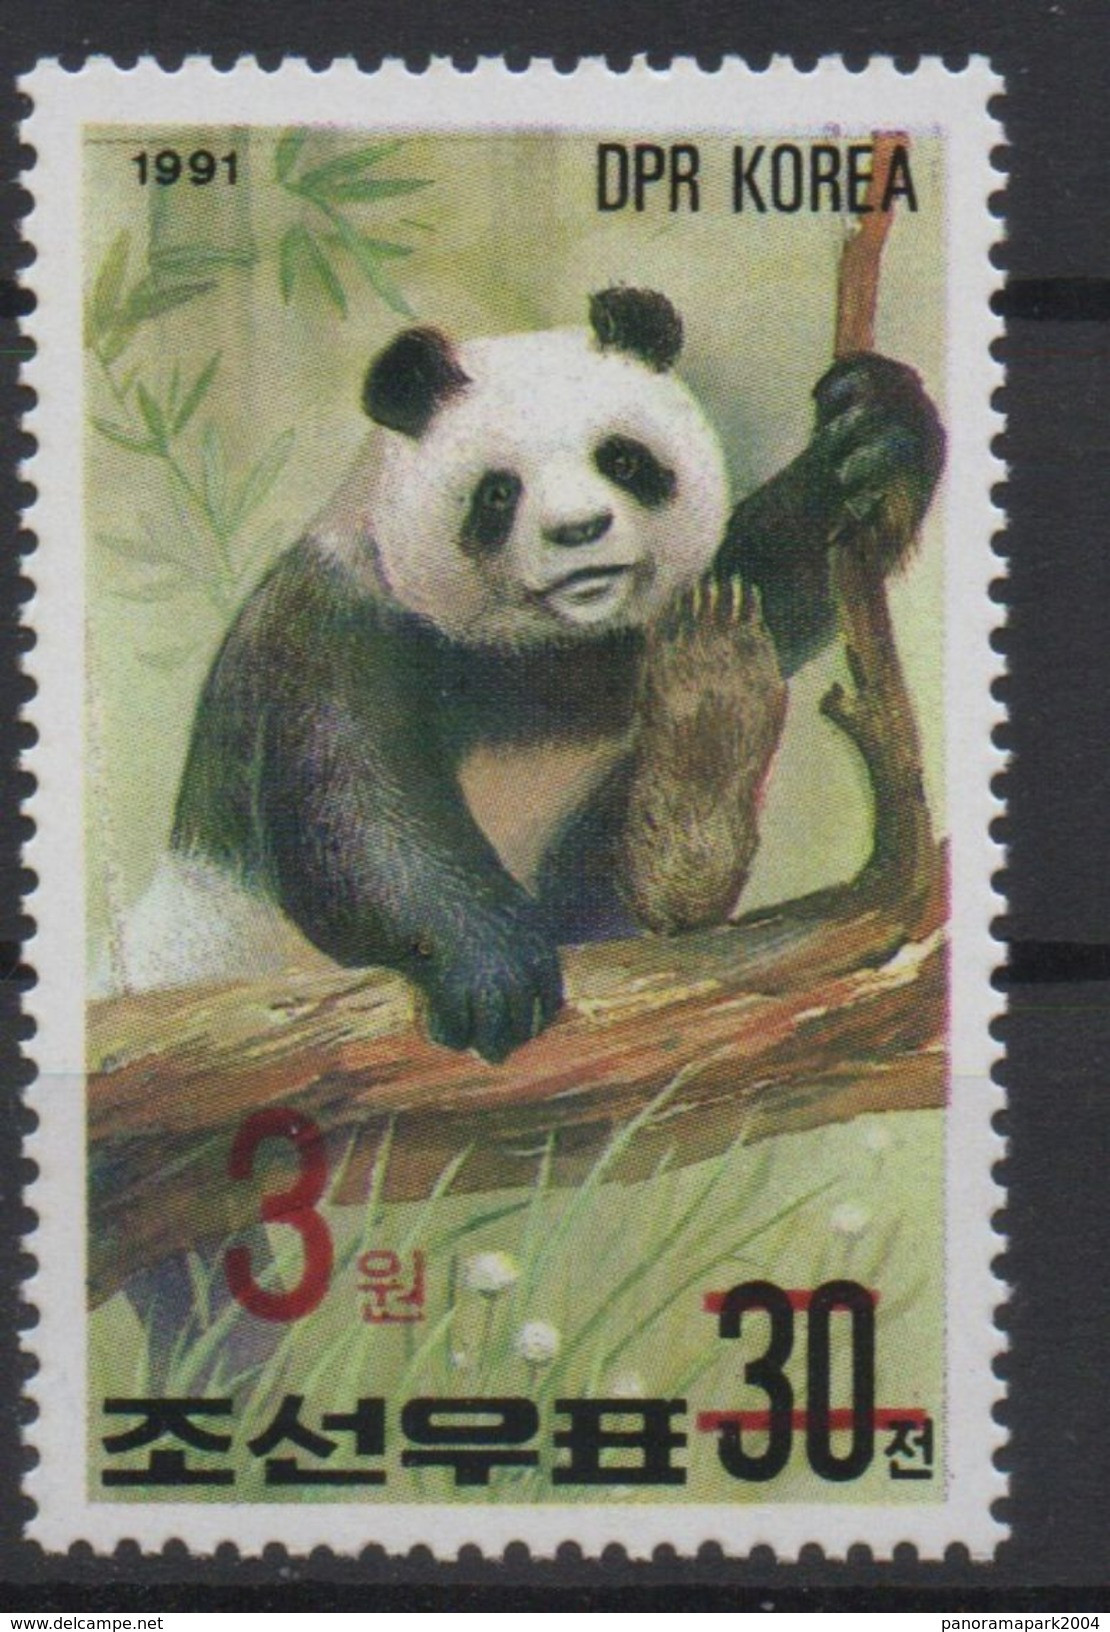 North Korea Corée Du Nord 2006 Mi. 5051 Surchargé Rouge RED OVERPRINT Faune Fauna Ours Bear Bär Panda MNH** RARE - Osos